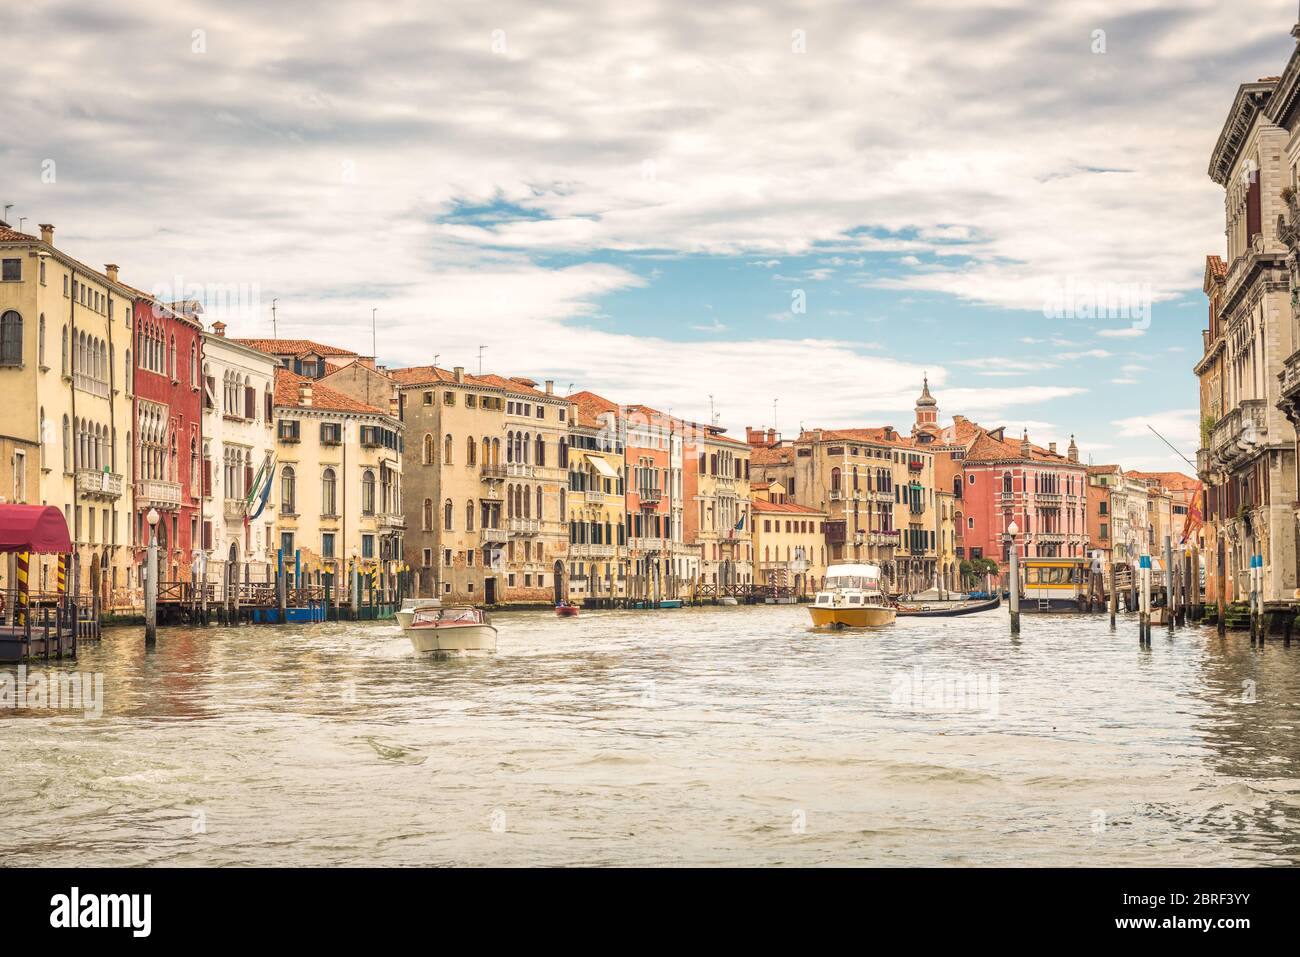 Vue panoramique sur le Grand Canal, Venise, Italie. Croisière romantique à Venise en été. Panorama de Venise avec de belles maisons anciennes. Tradition Banque D'Images